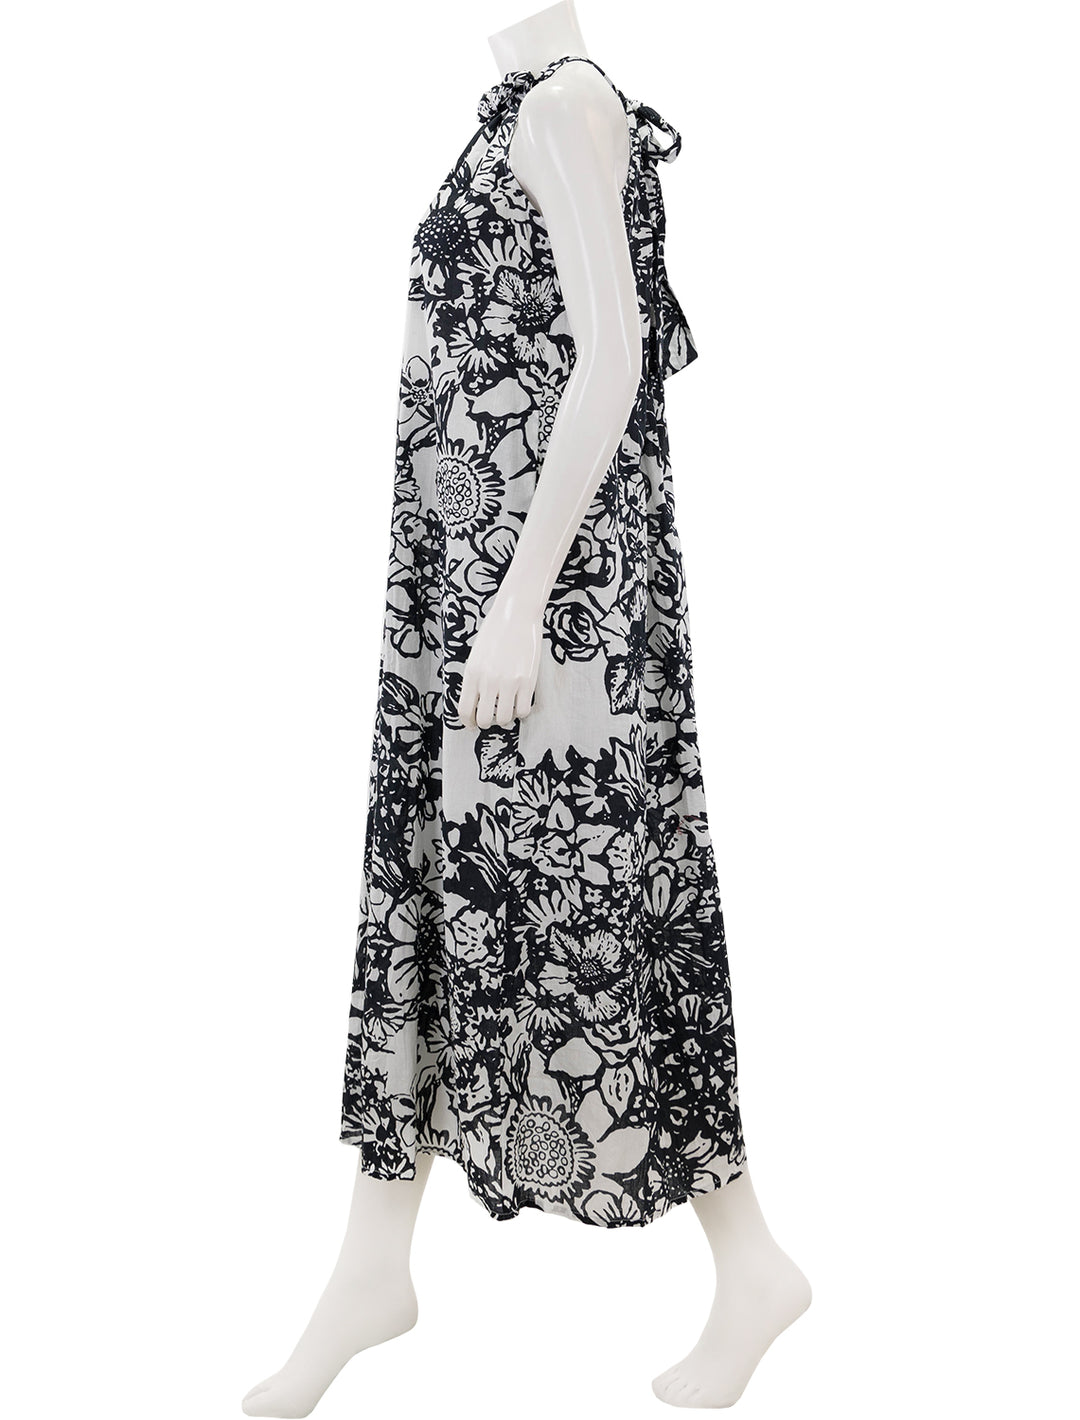 Side view of Velvet's penelope dress in black and white.